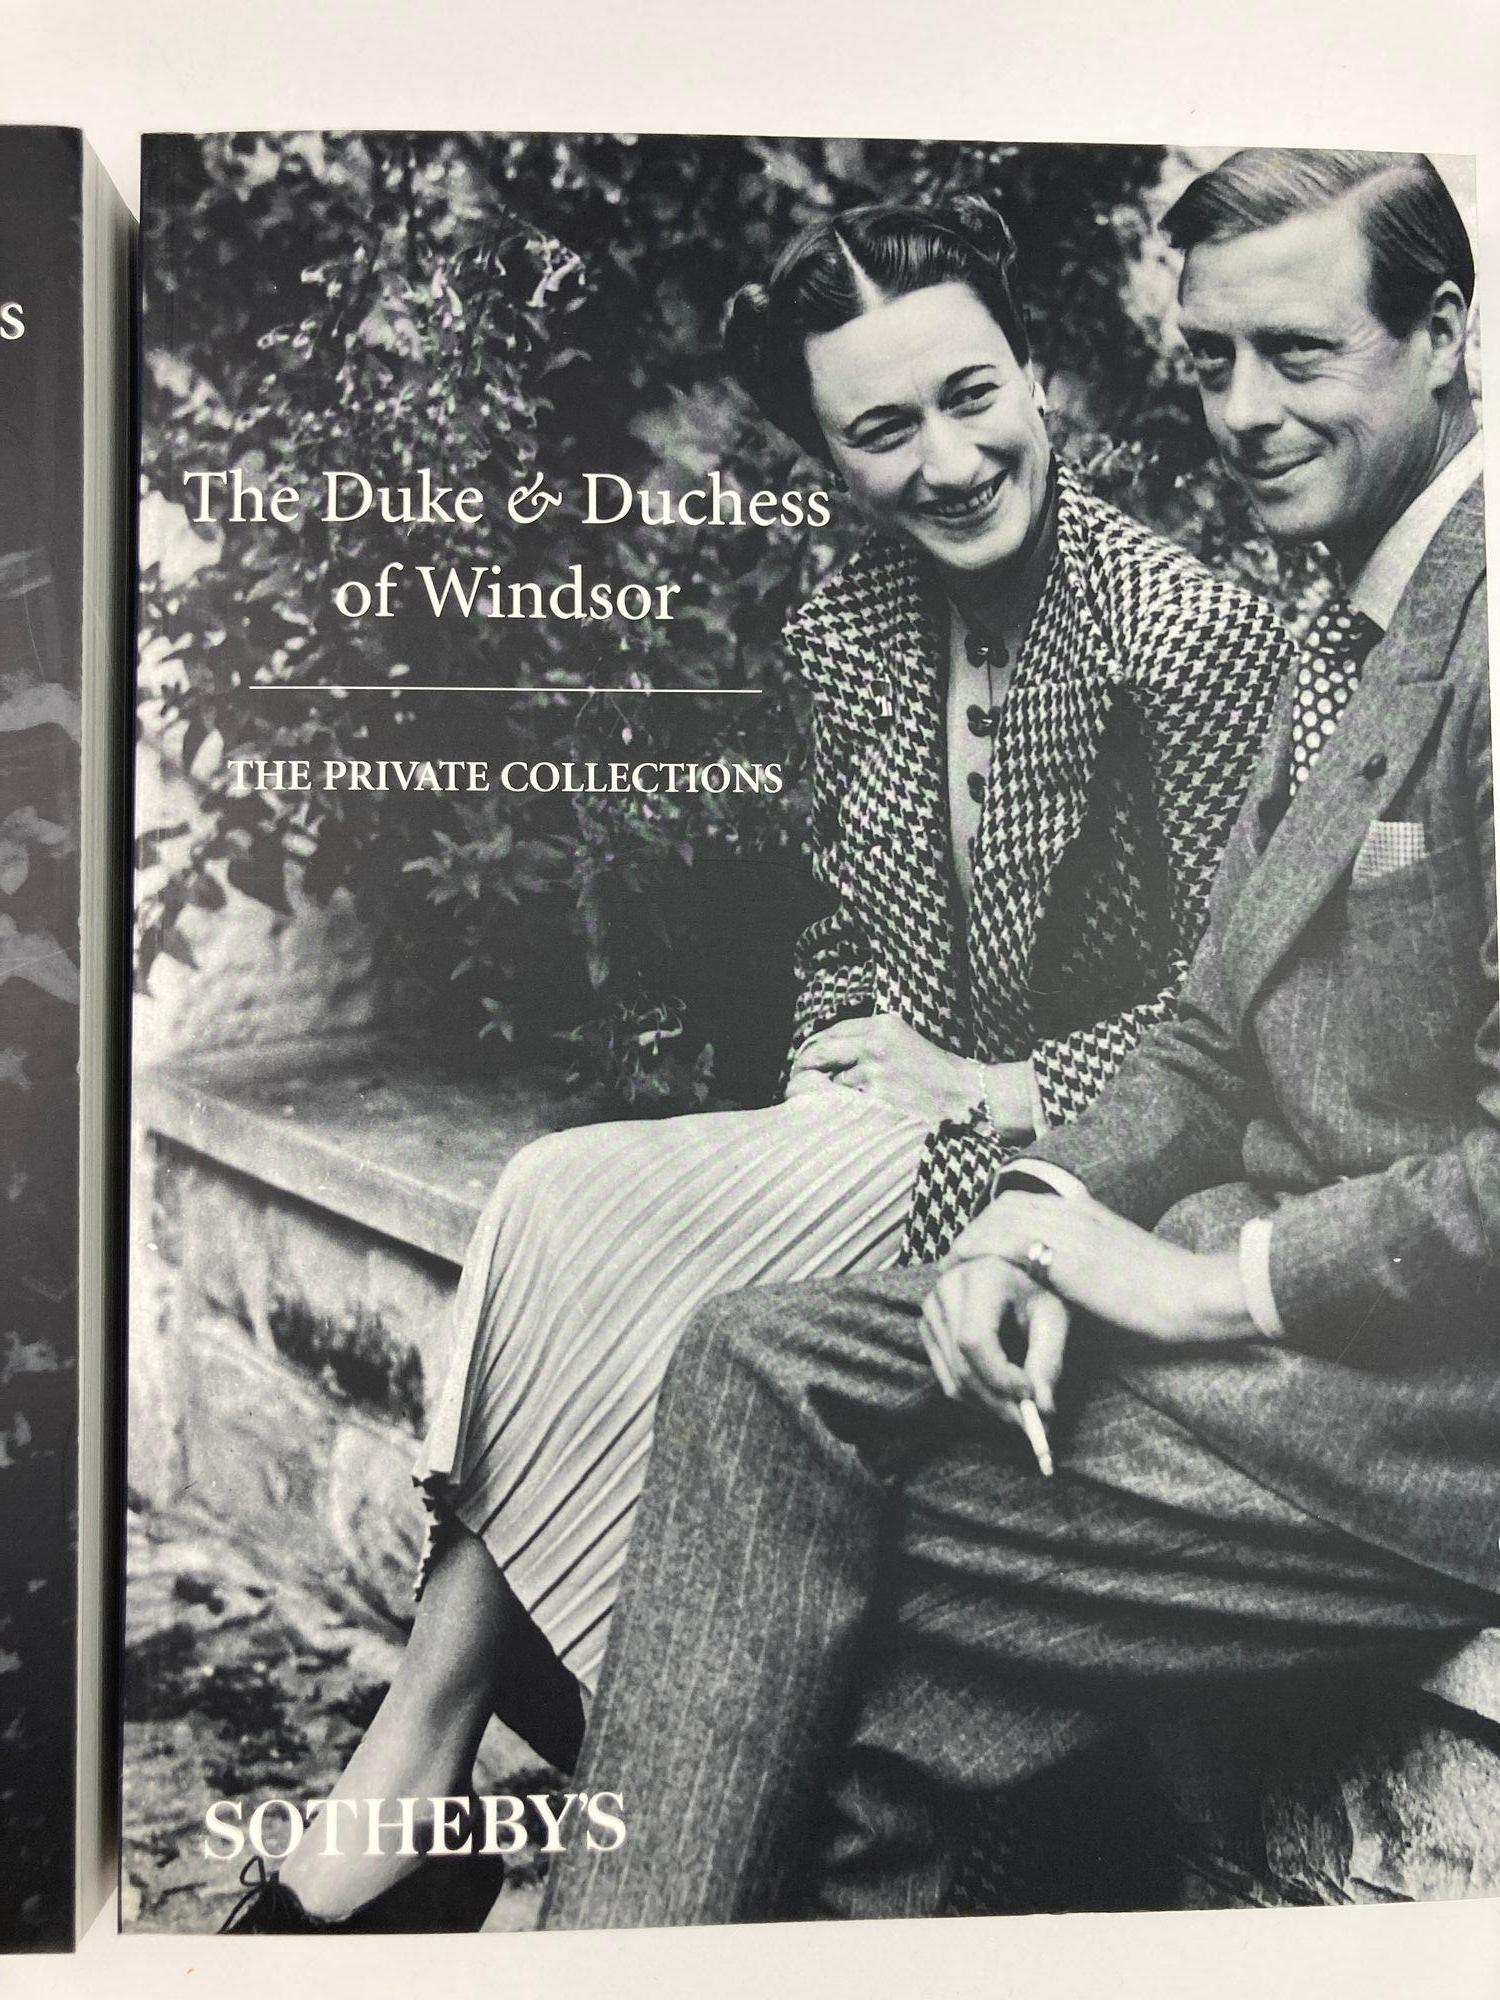 The Duke and Duchess of Windsor Auction Sotheby's Books Catalogs in Slipcase Box (Le duc et la duchesse de Windsor, ventes aux enchères, catalogues de livres de Sotheby's dans une boîte) en vente 3